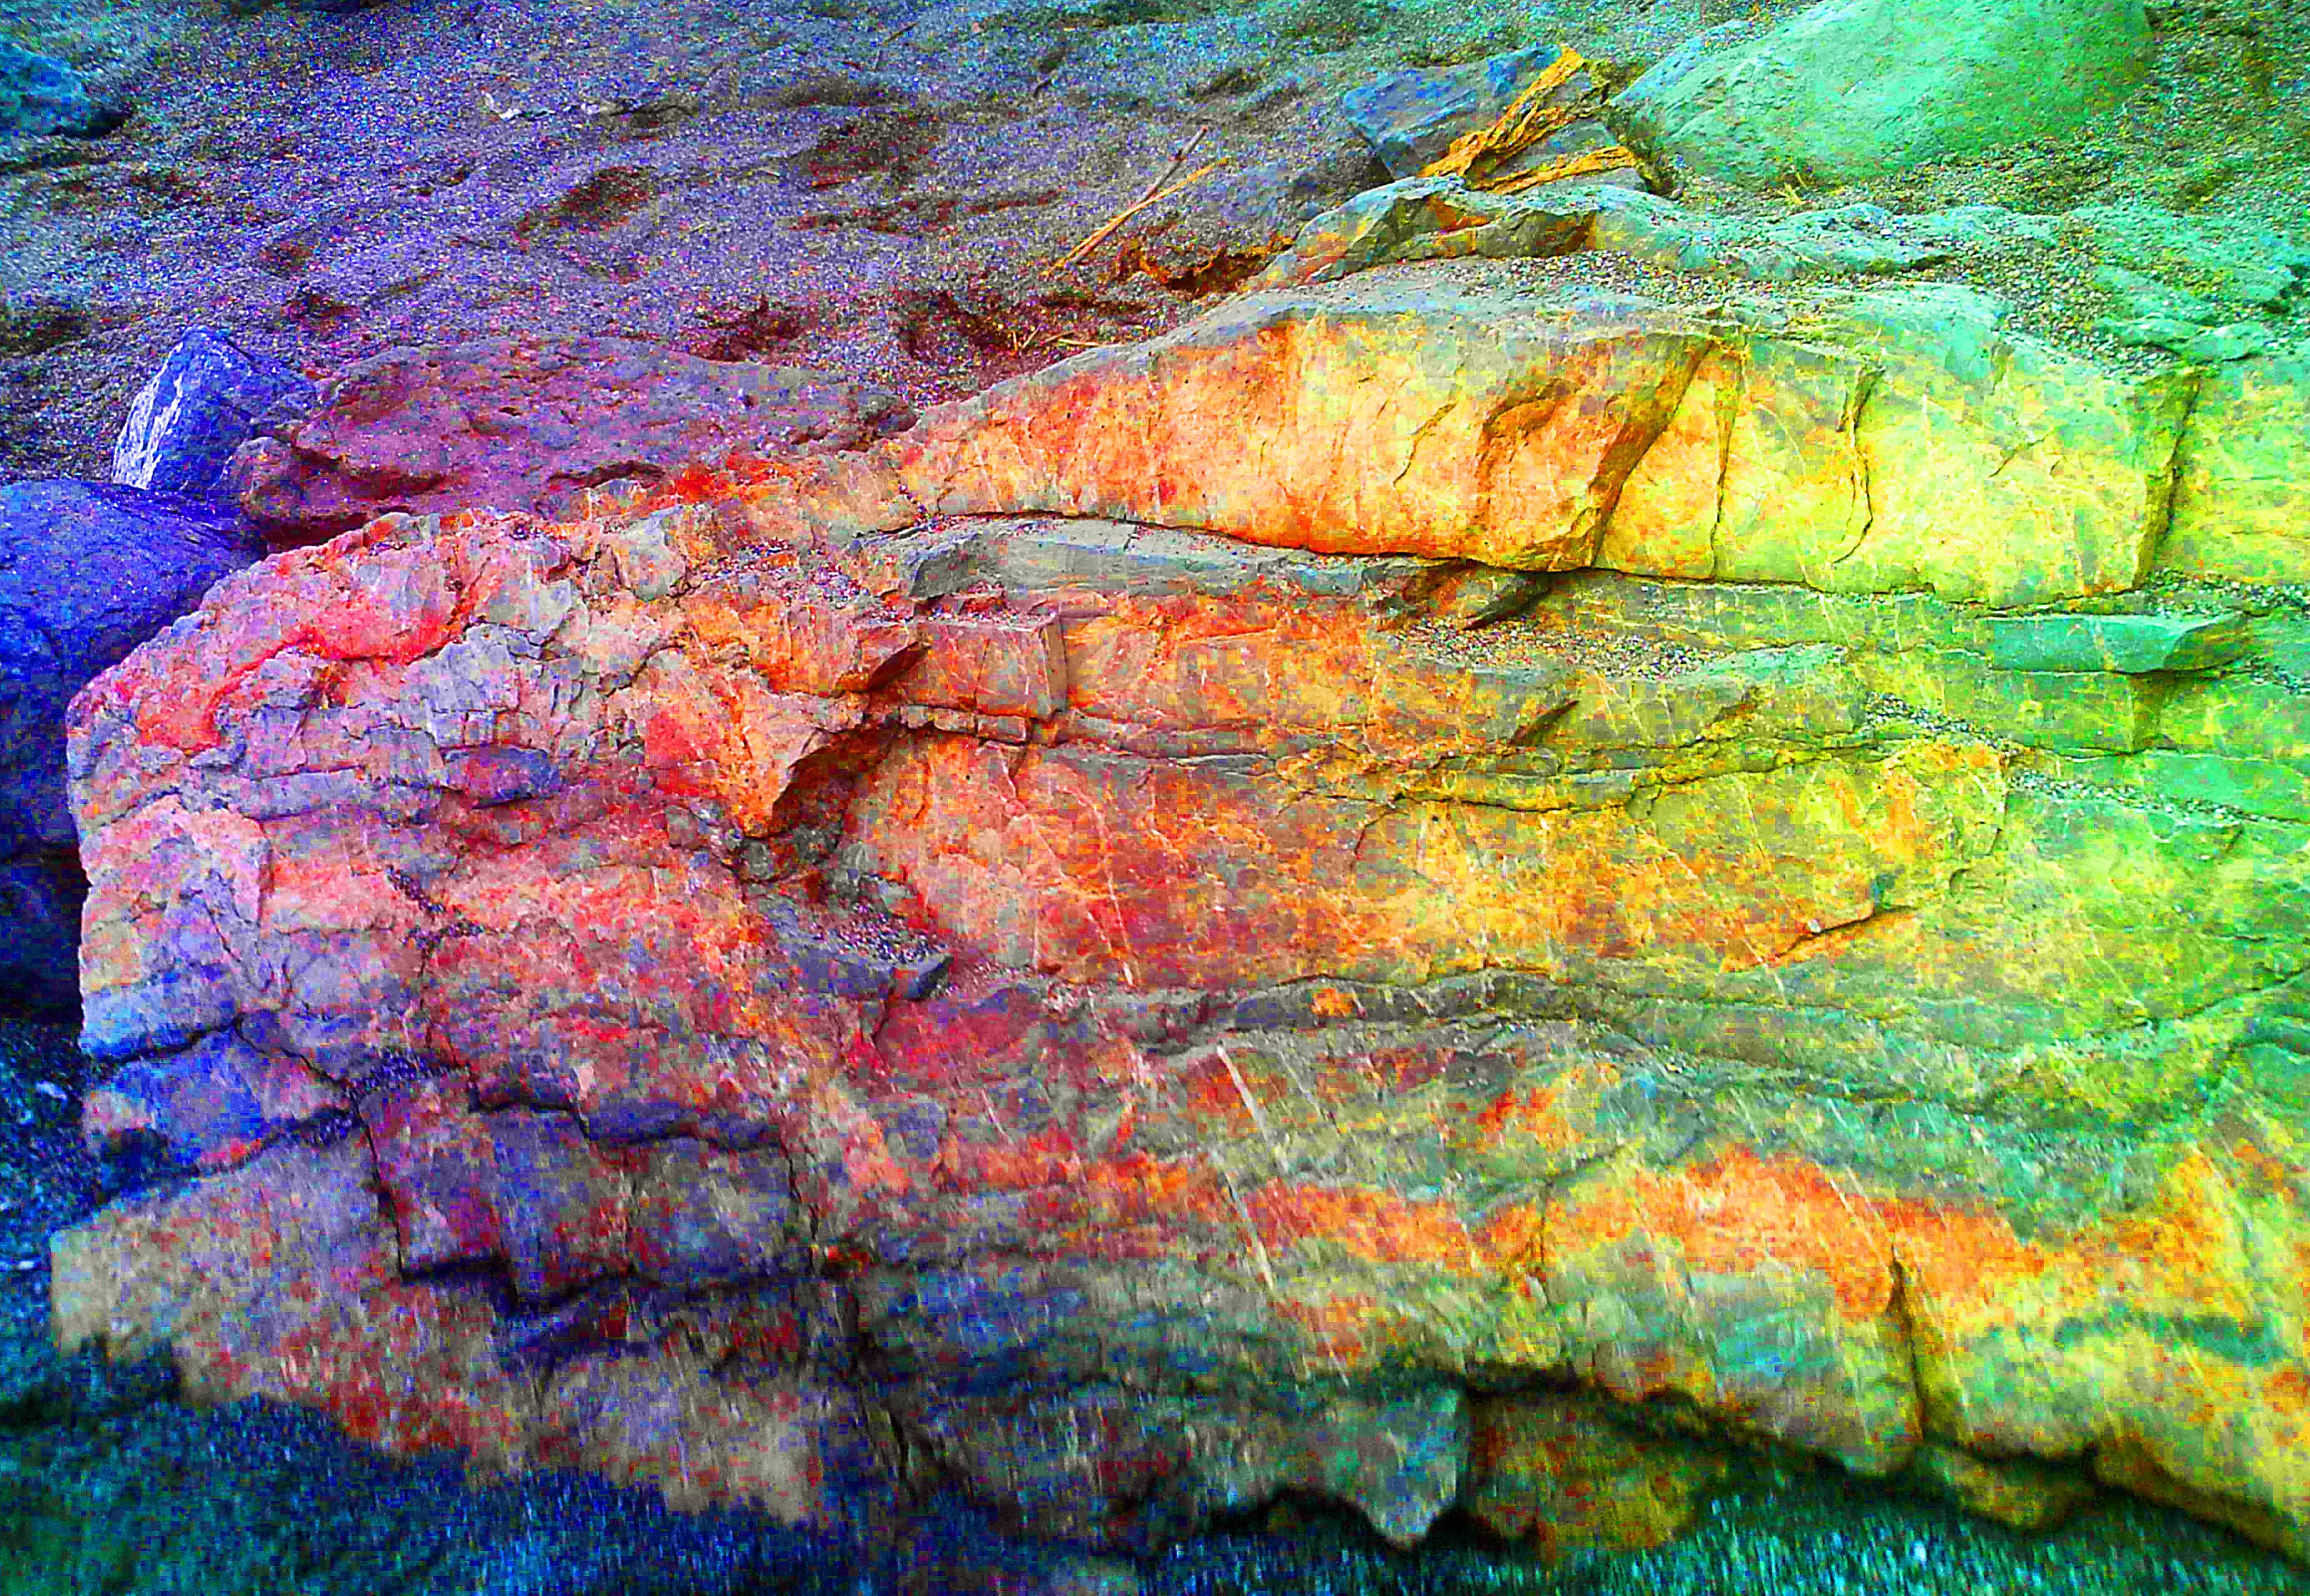 Rainbow Rock by MandyMcPebbleFace on DeviantArt